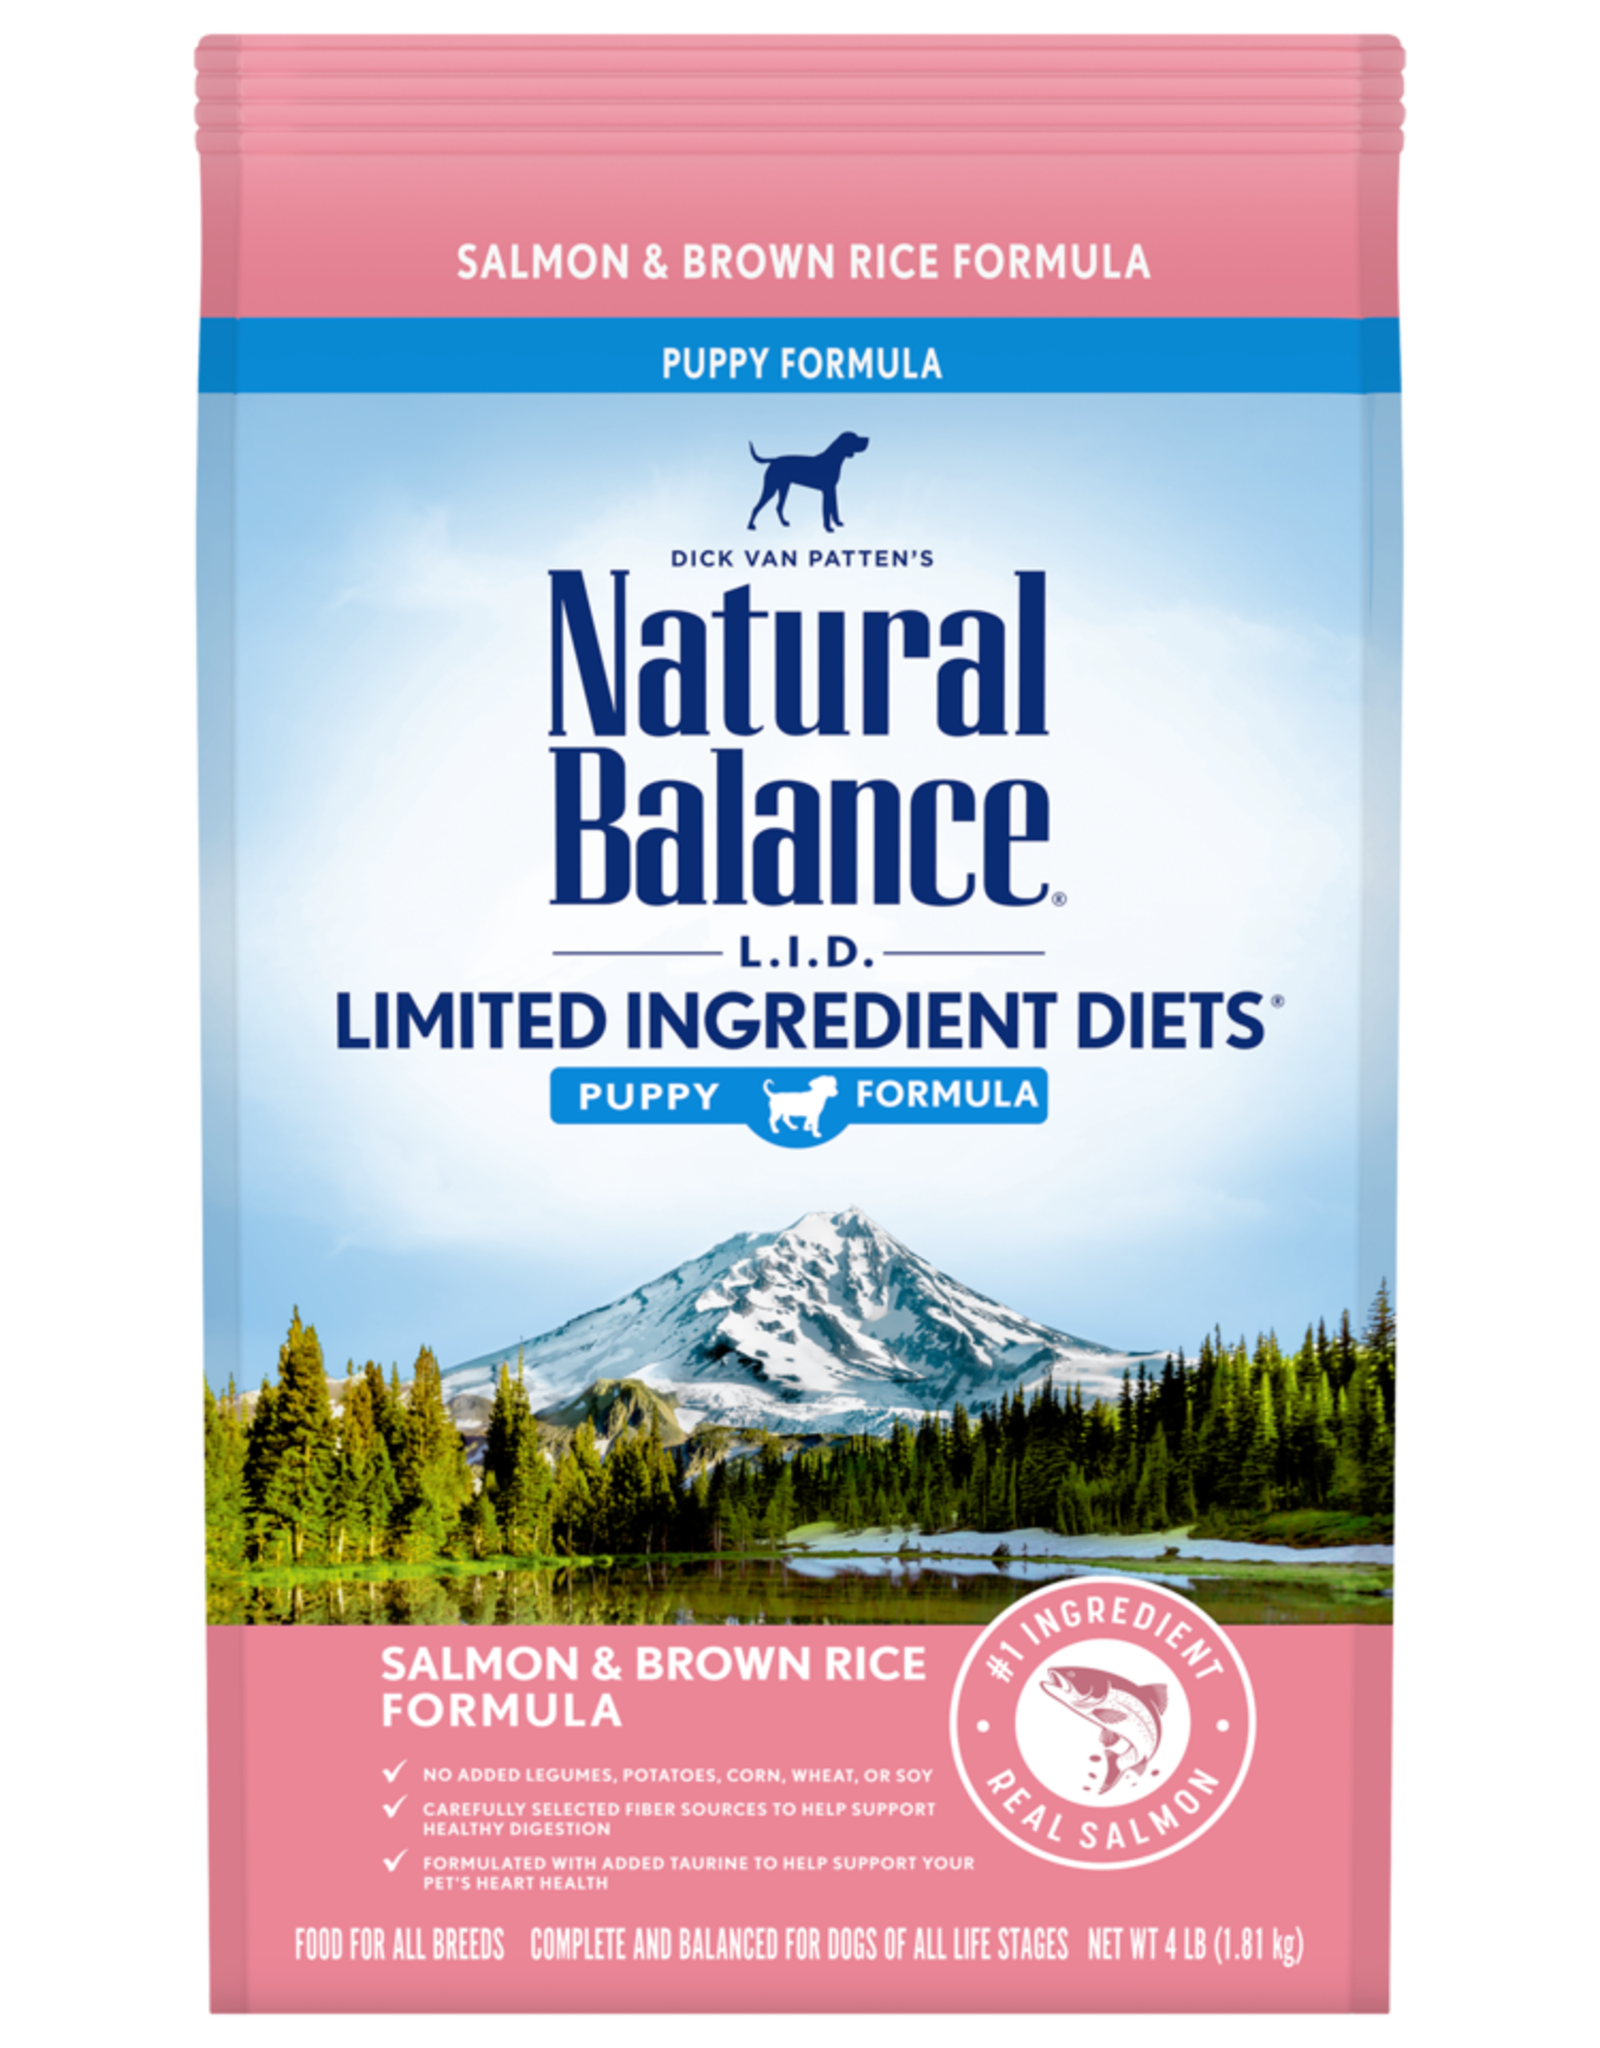 NATURAL BALANCE PET FOODS, INC NATURAL BALANCE LID SALMON & RICE 12LBS